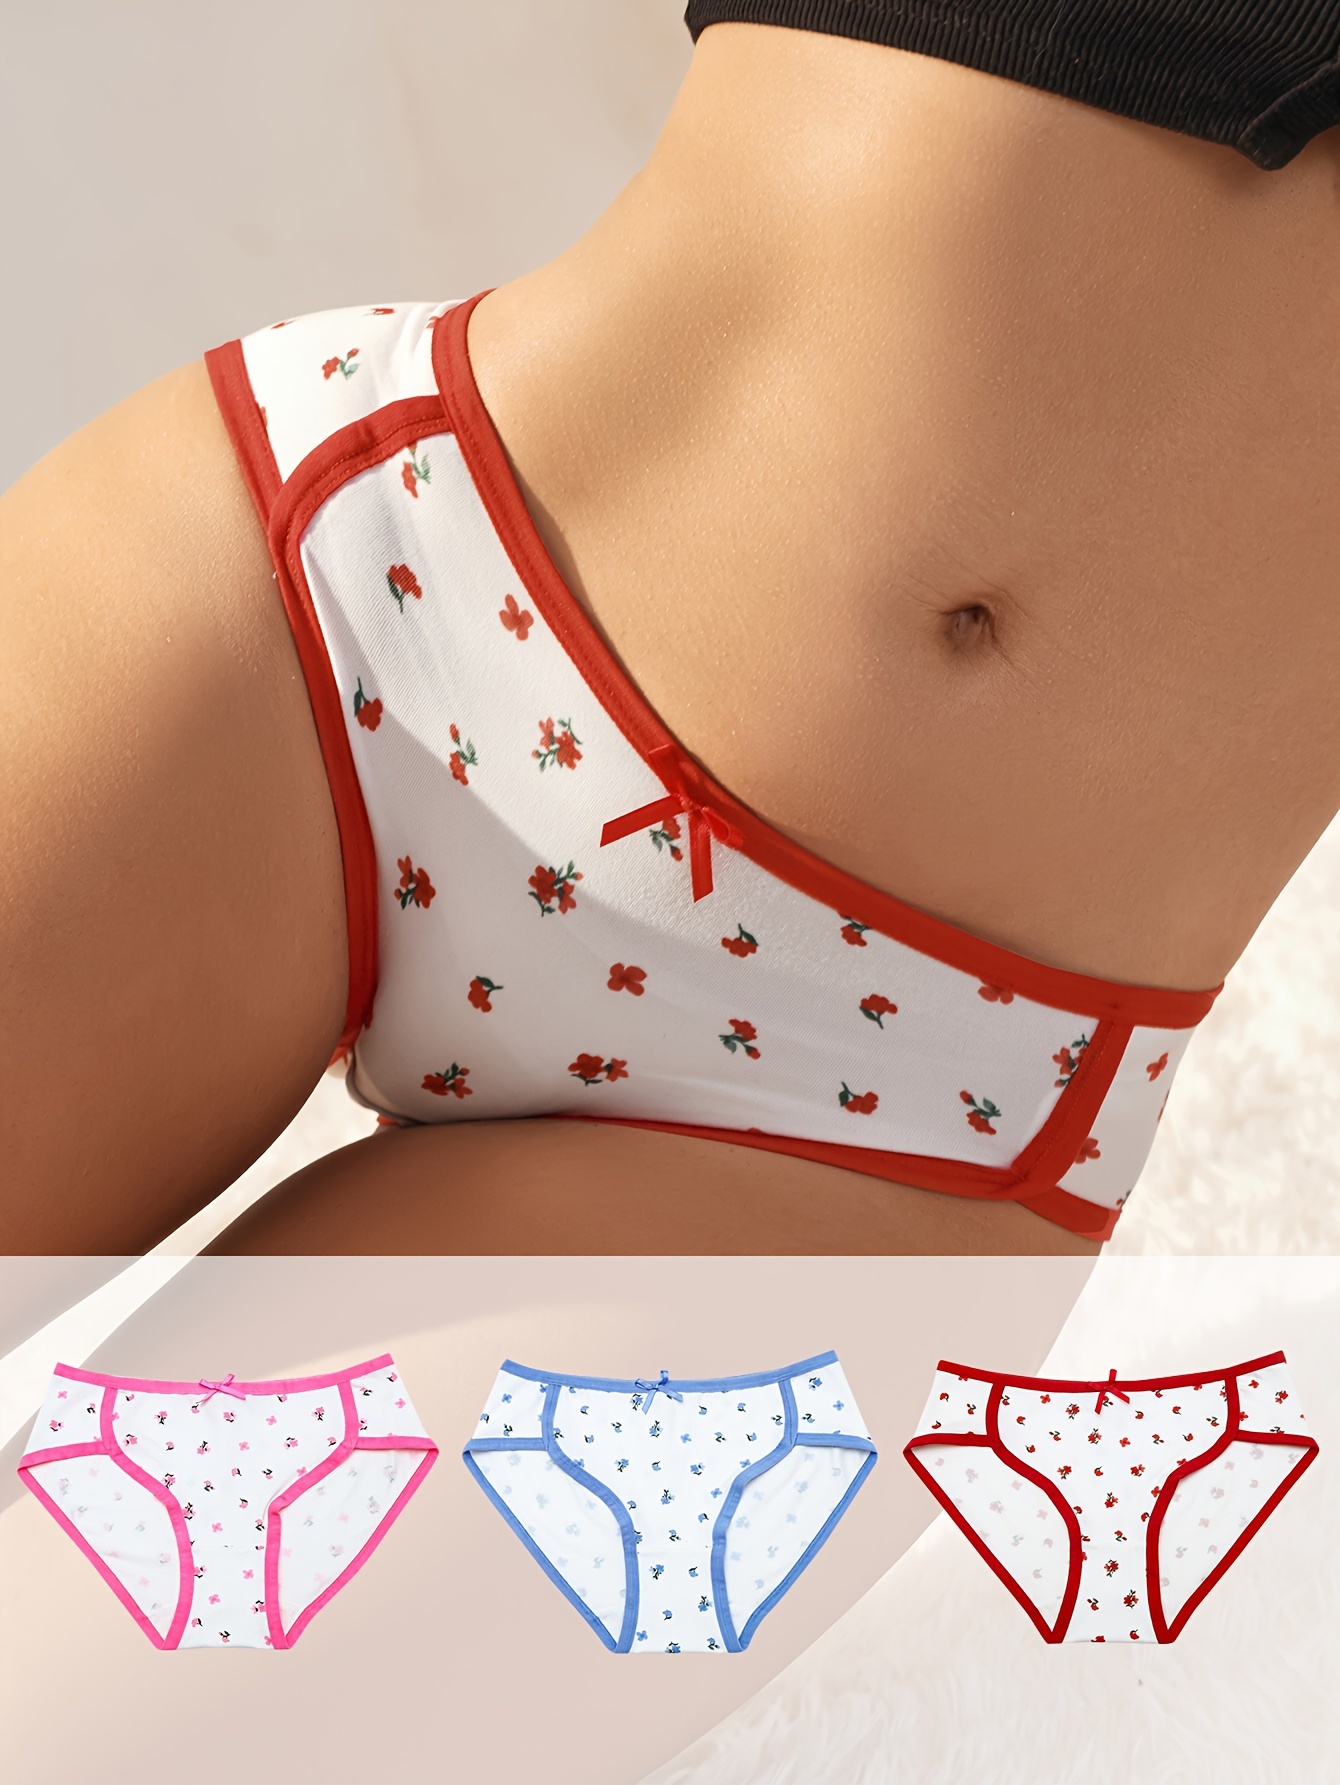 Disposable Underwear For Massage - Temu